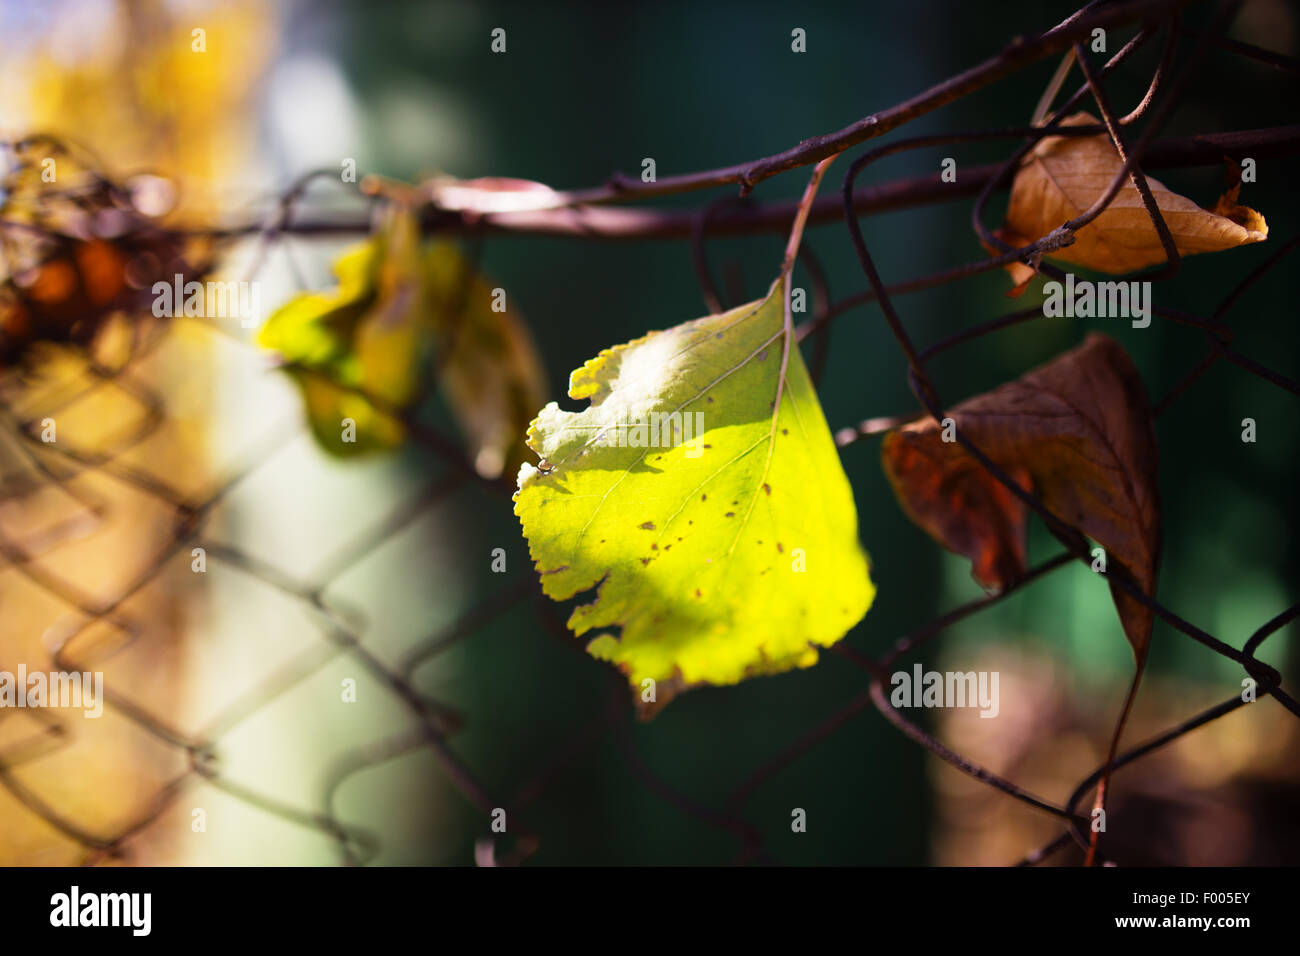 Una hoja de otoño caído sobre una valla de alambre, en backligt Foto de stock